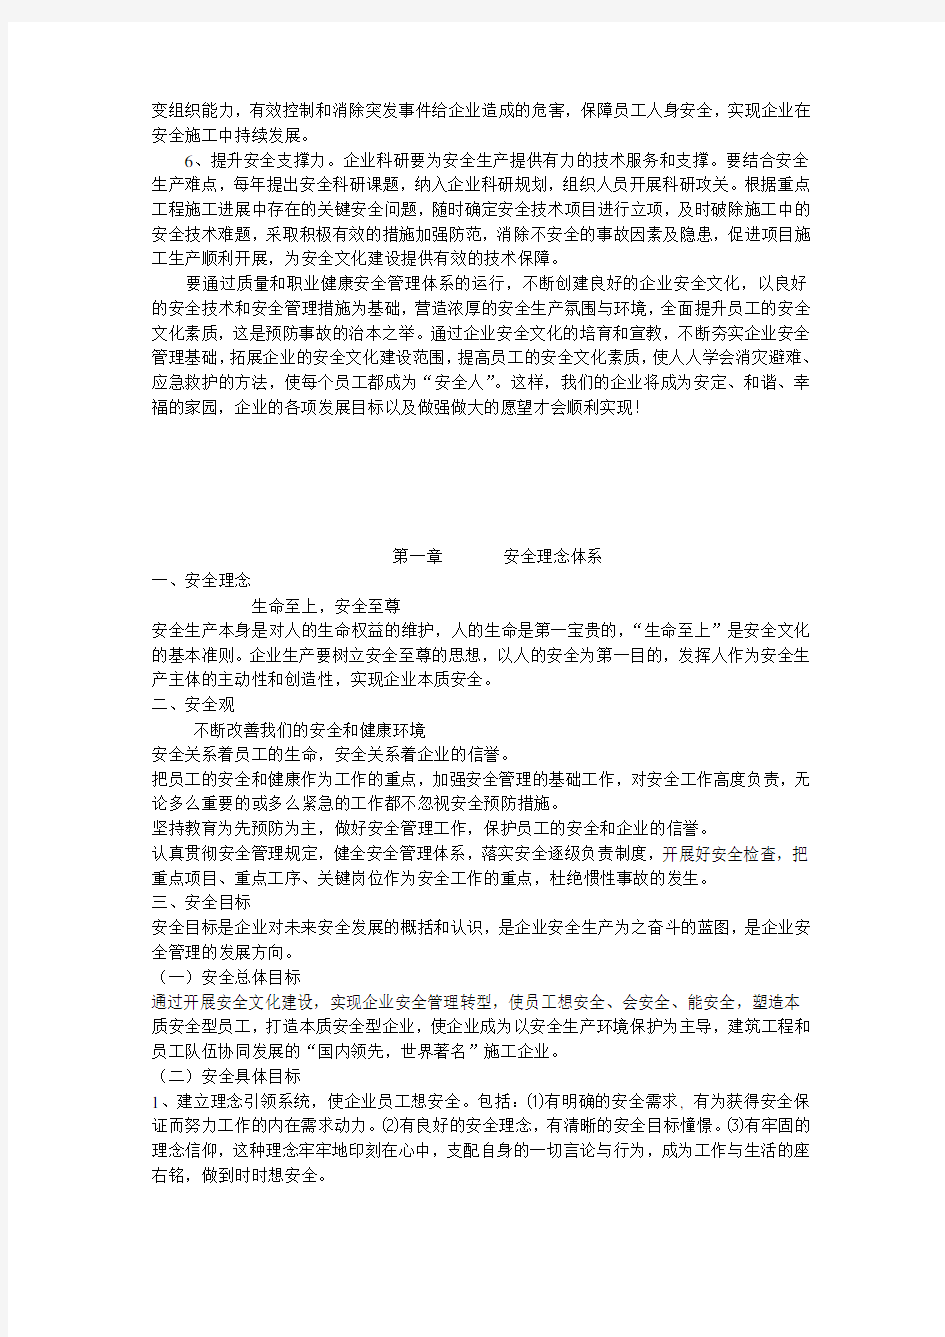 中铁安全文化手册